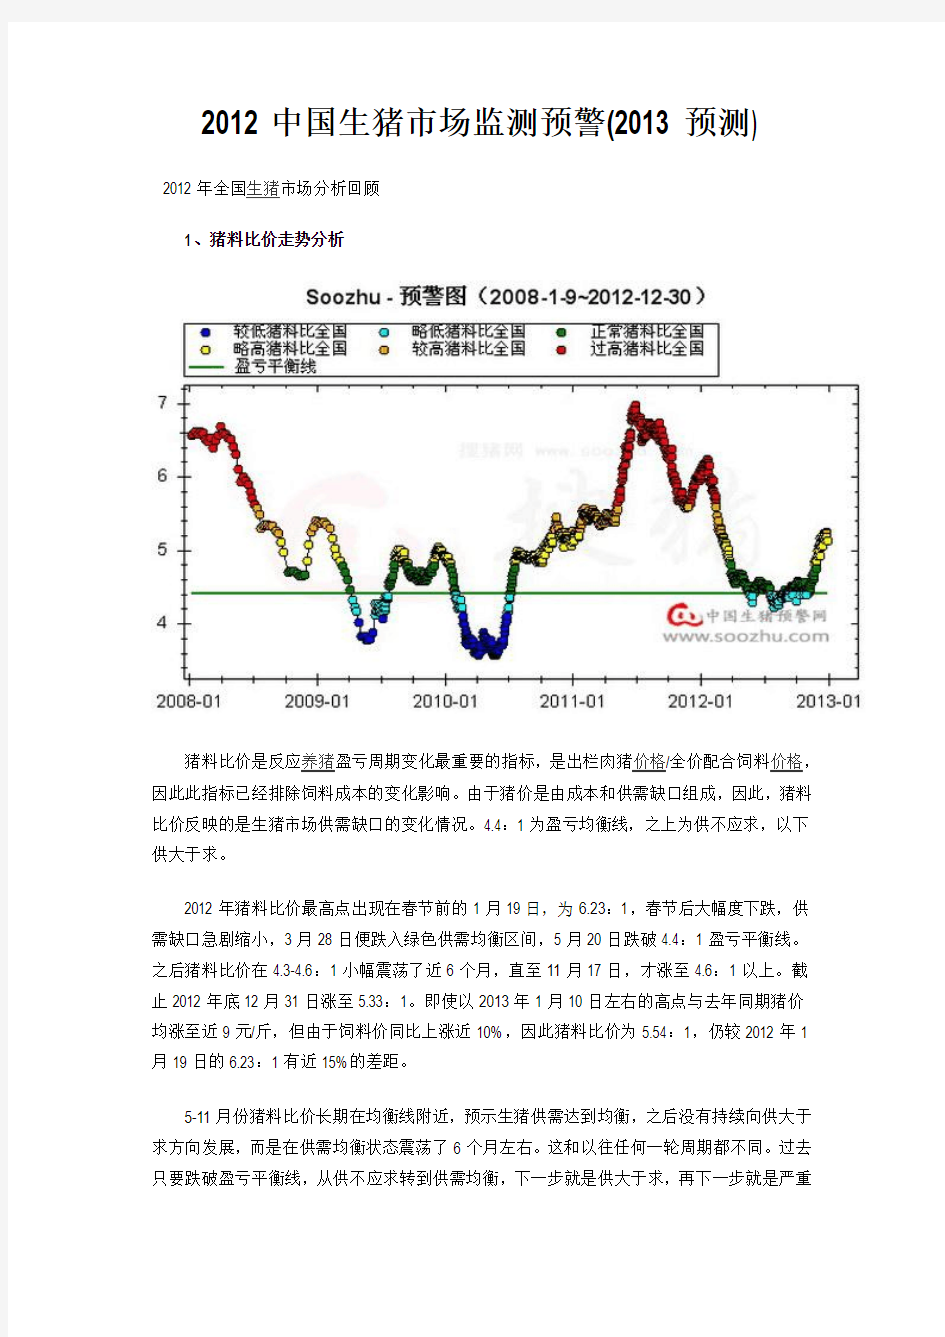 2012中国生猪市场监测预警(2013预测)